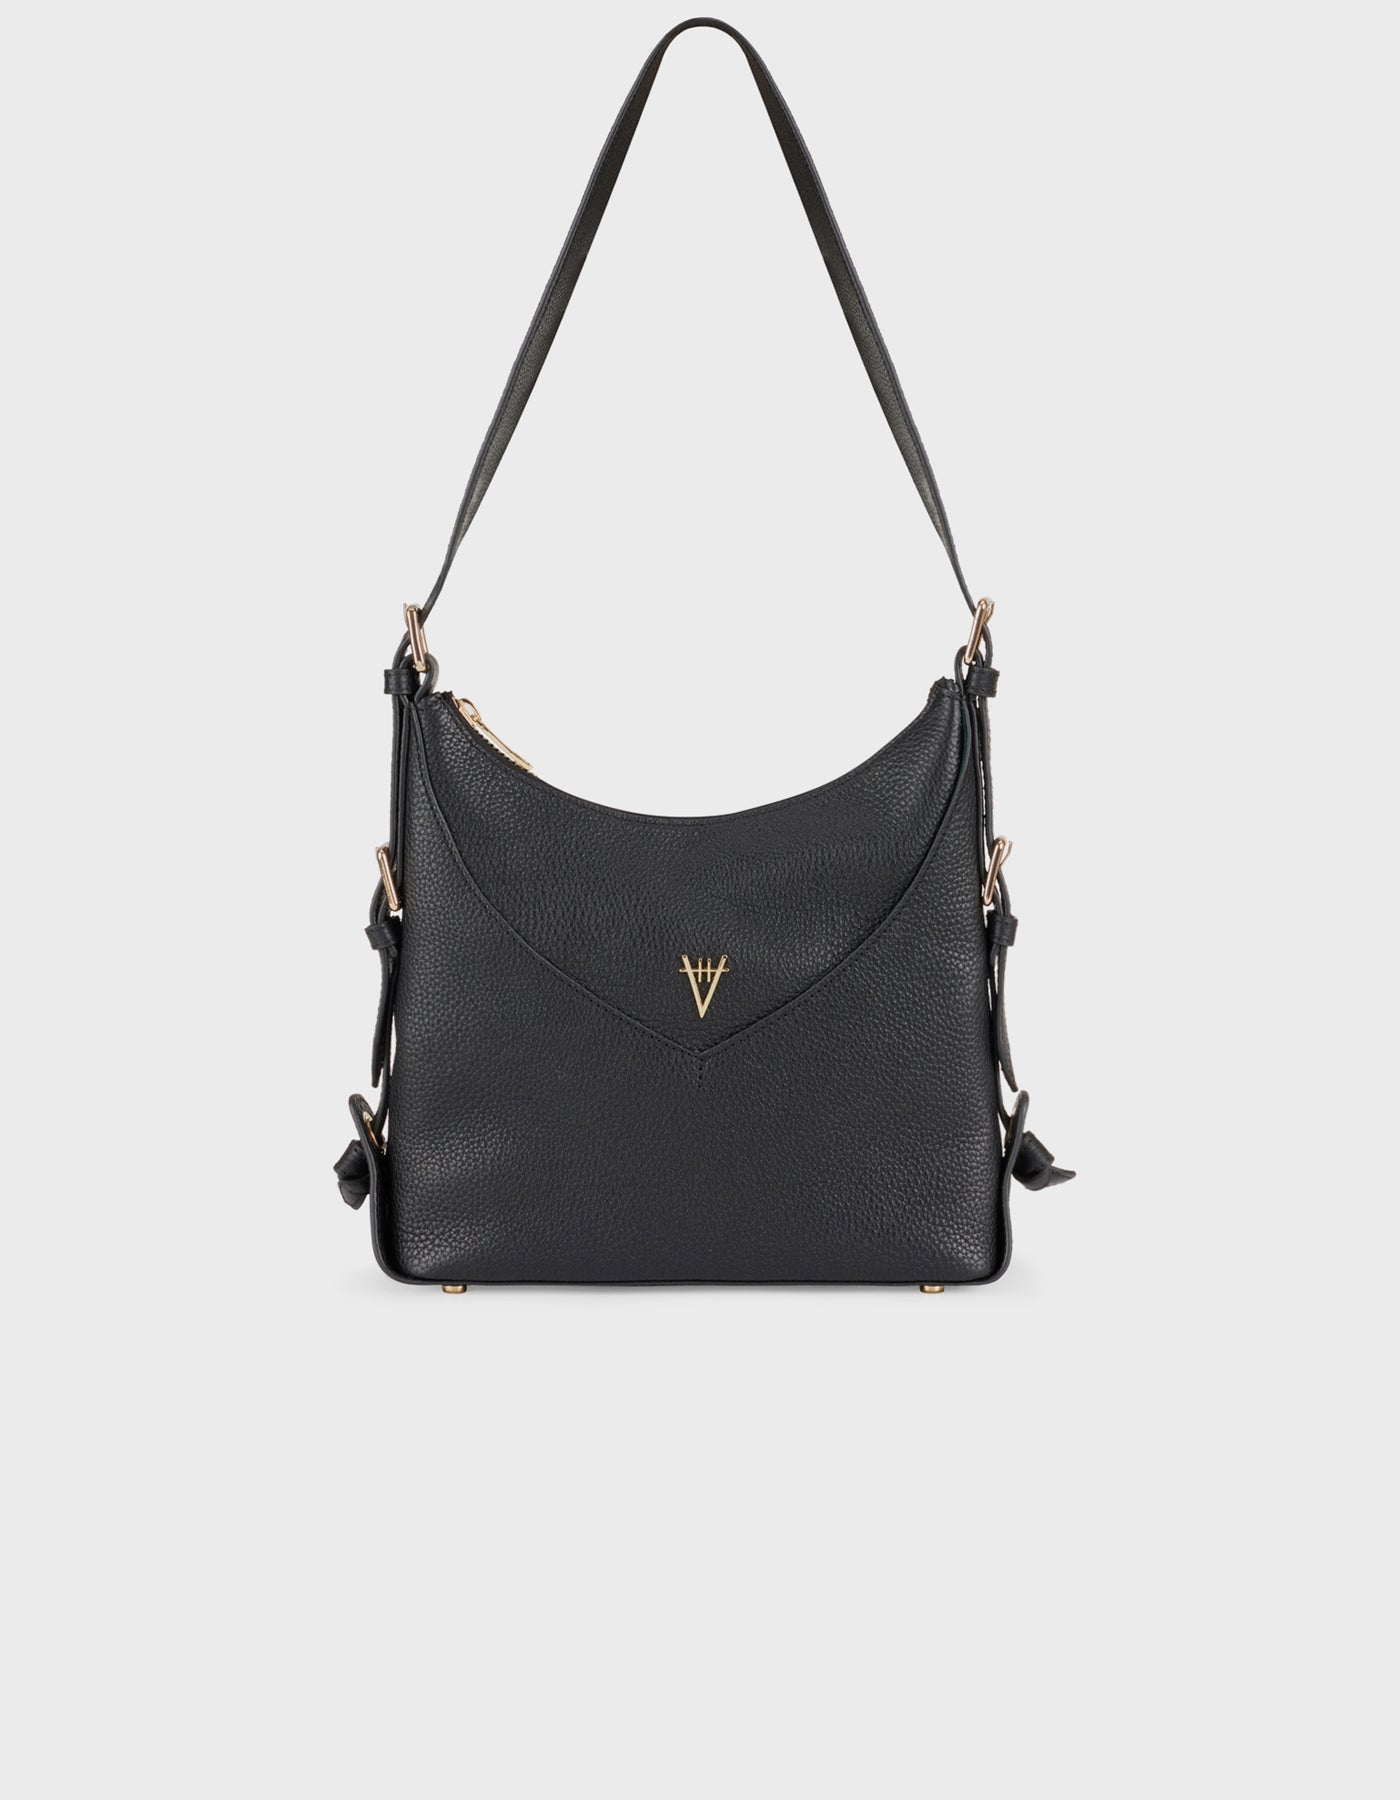 Hiva Atelier | Safari Shoulder Bag Black | Beautiful and Versatile